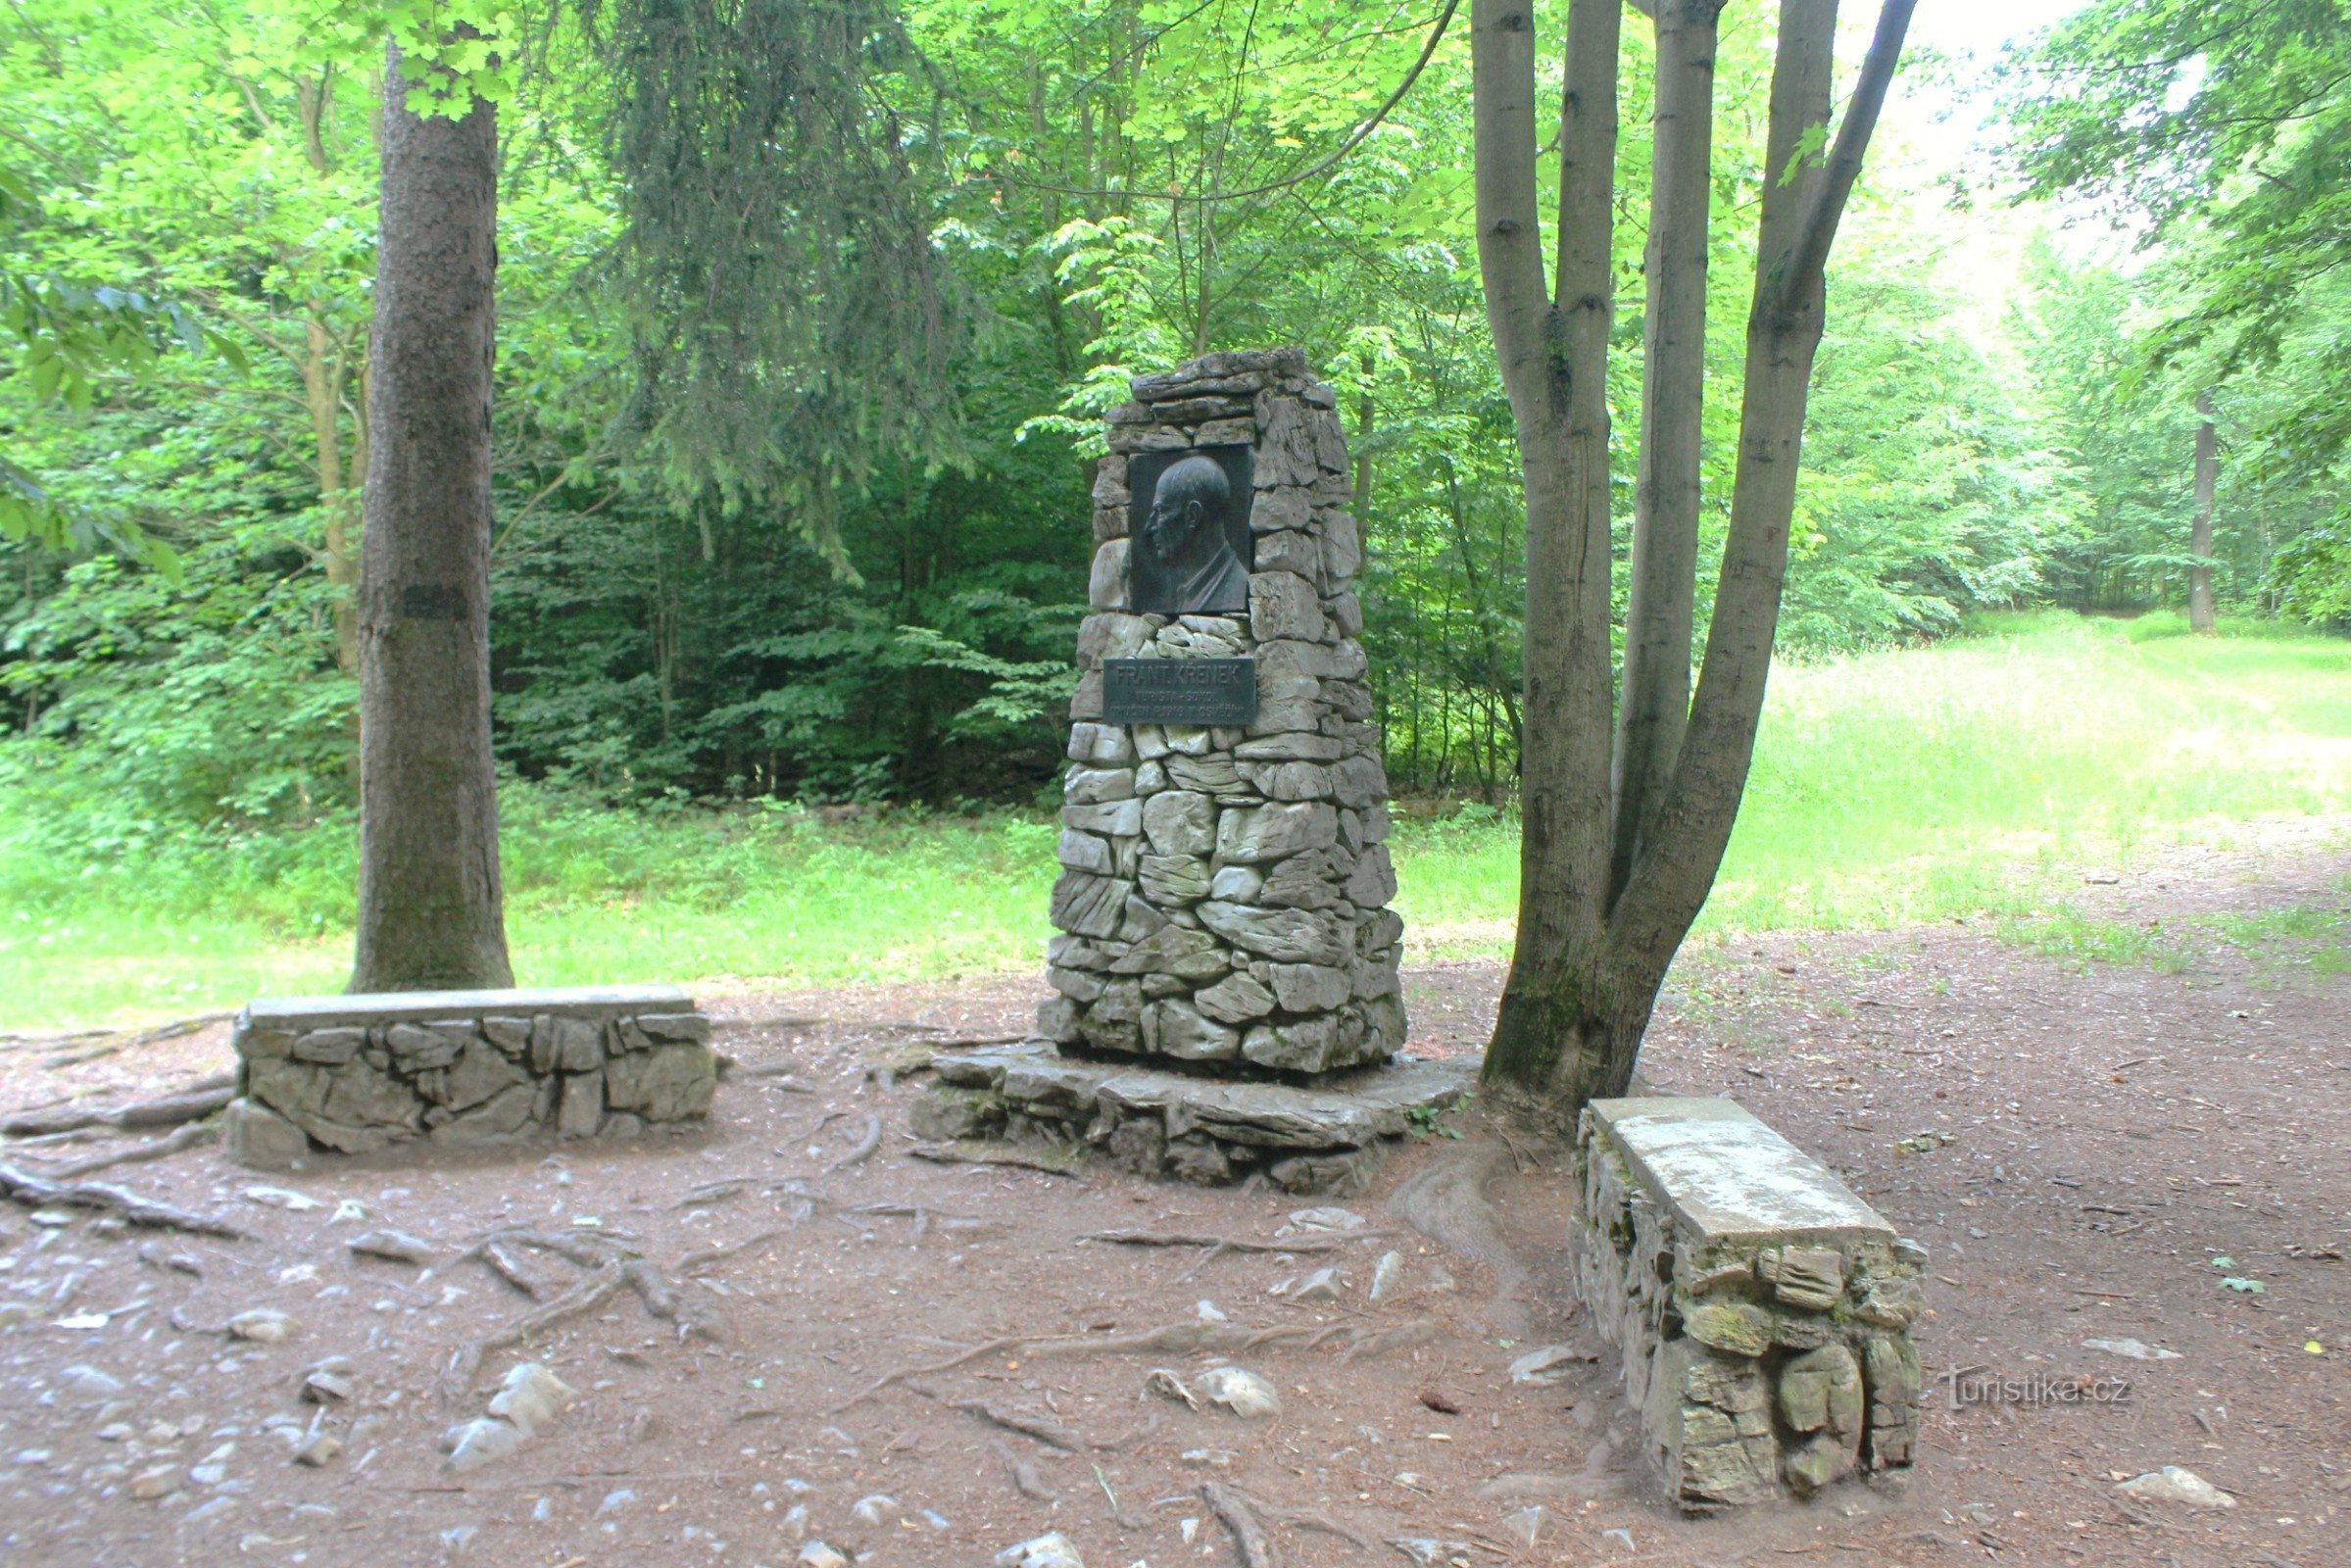 Křenk's monument